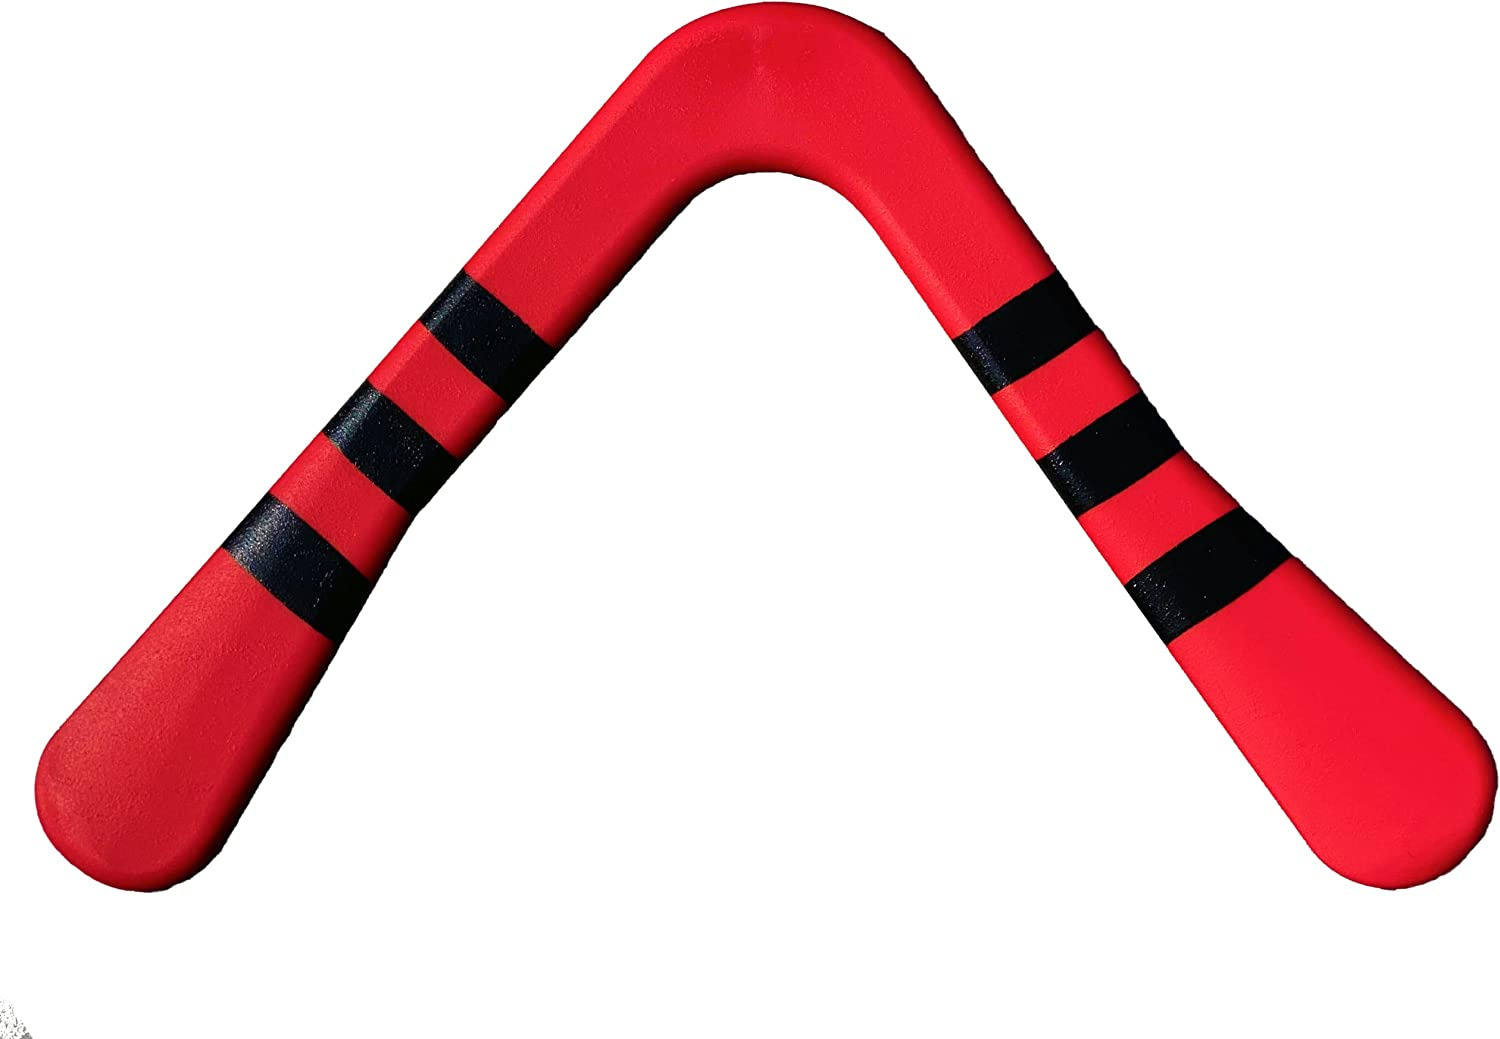 Polypropylene Boomerangs for Kids 5-14 - Real Aerodynamic Boomerang